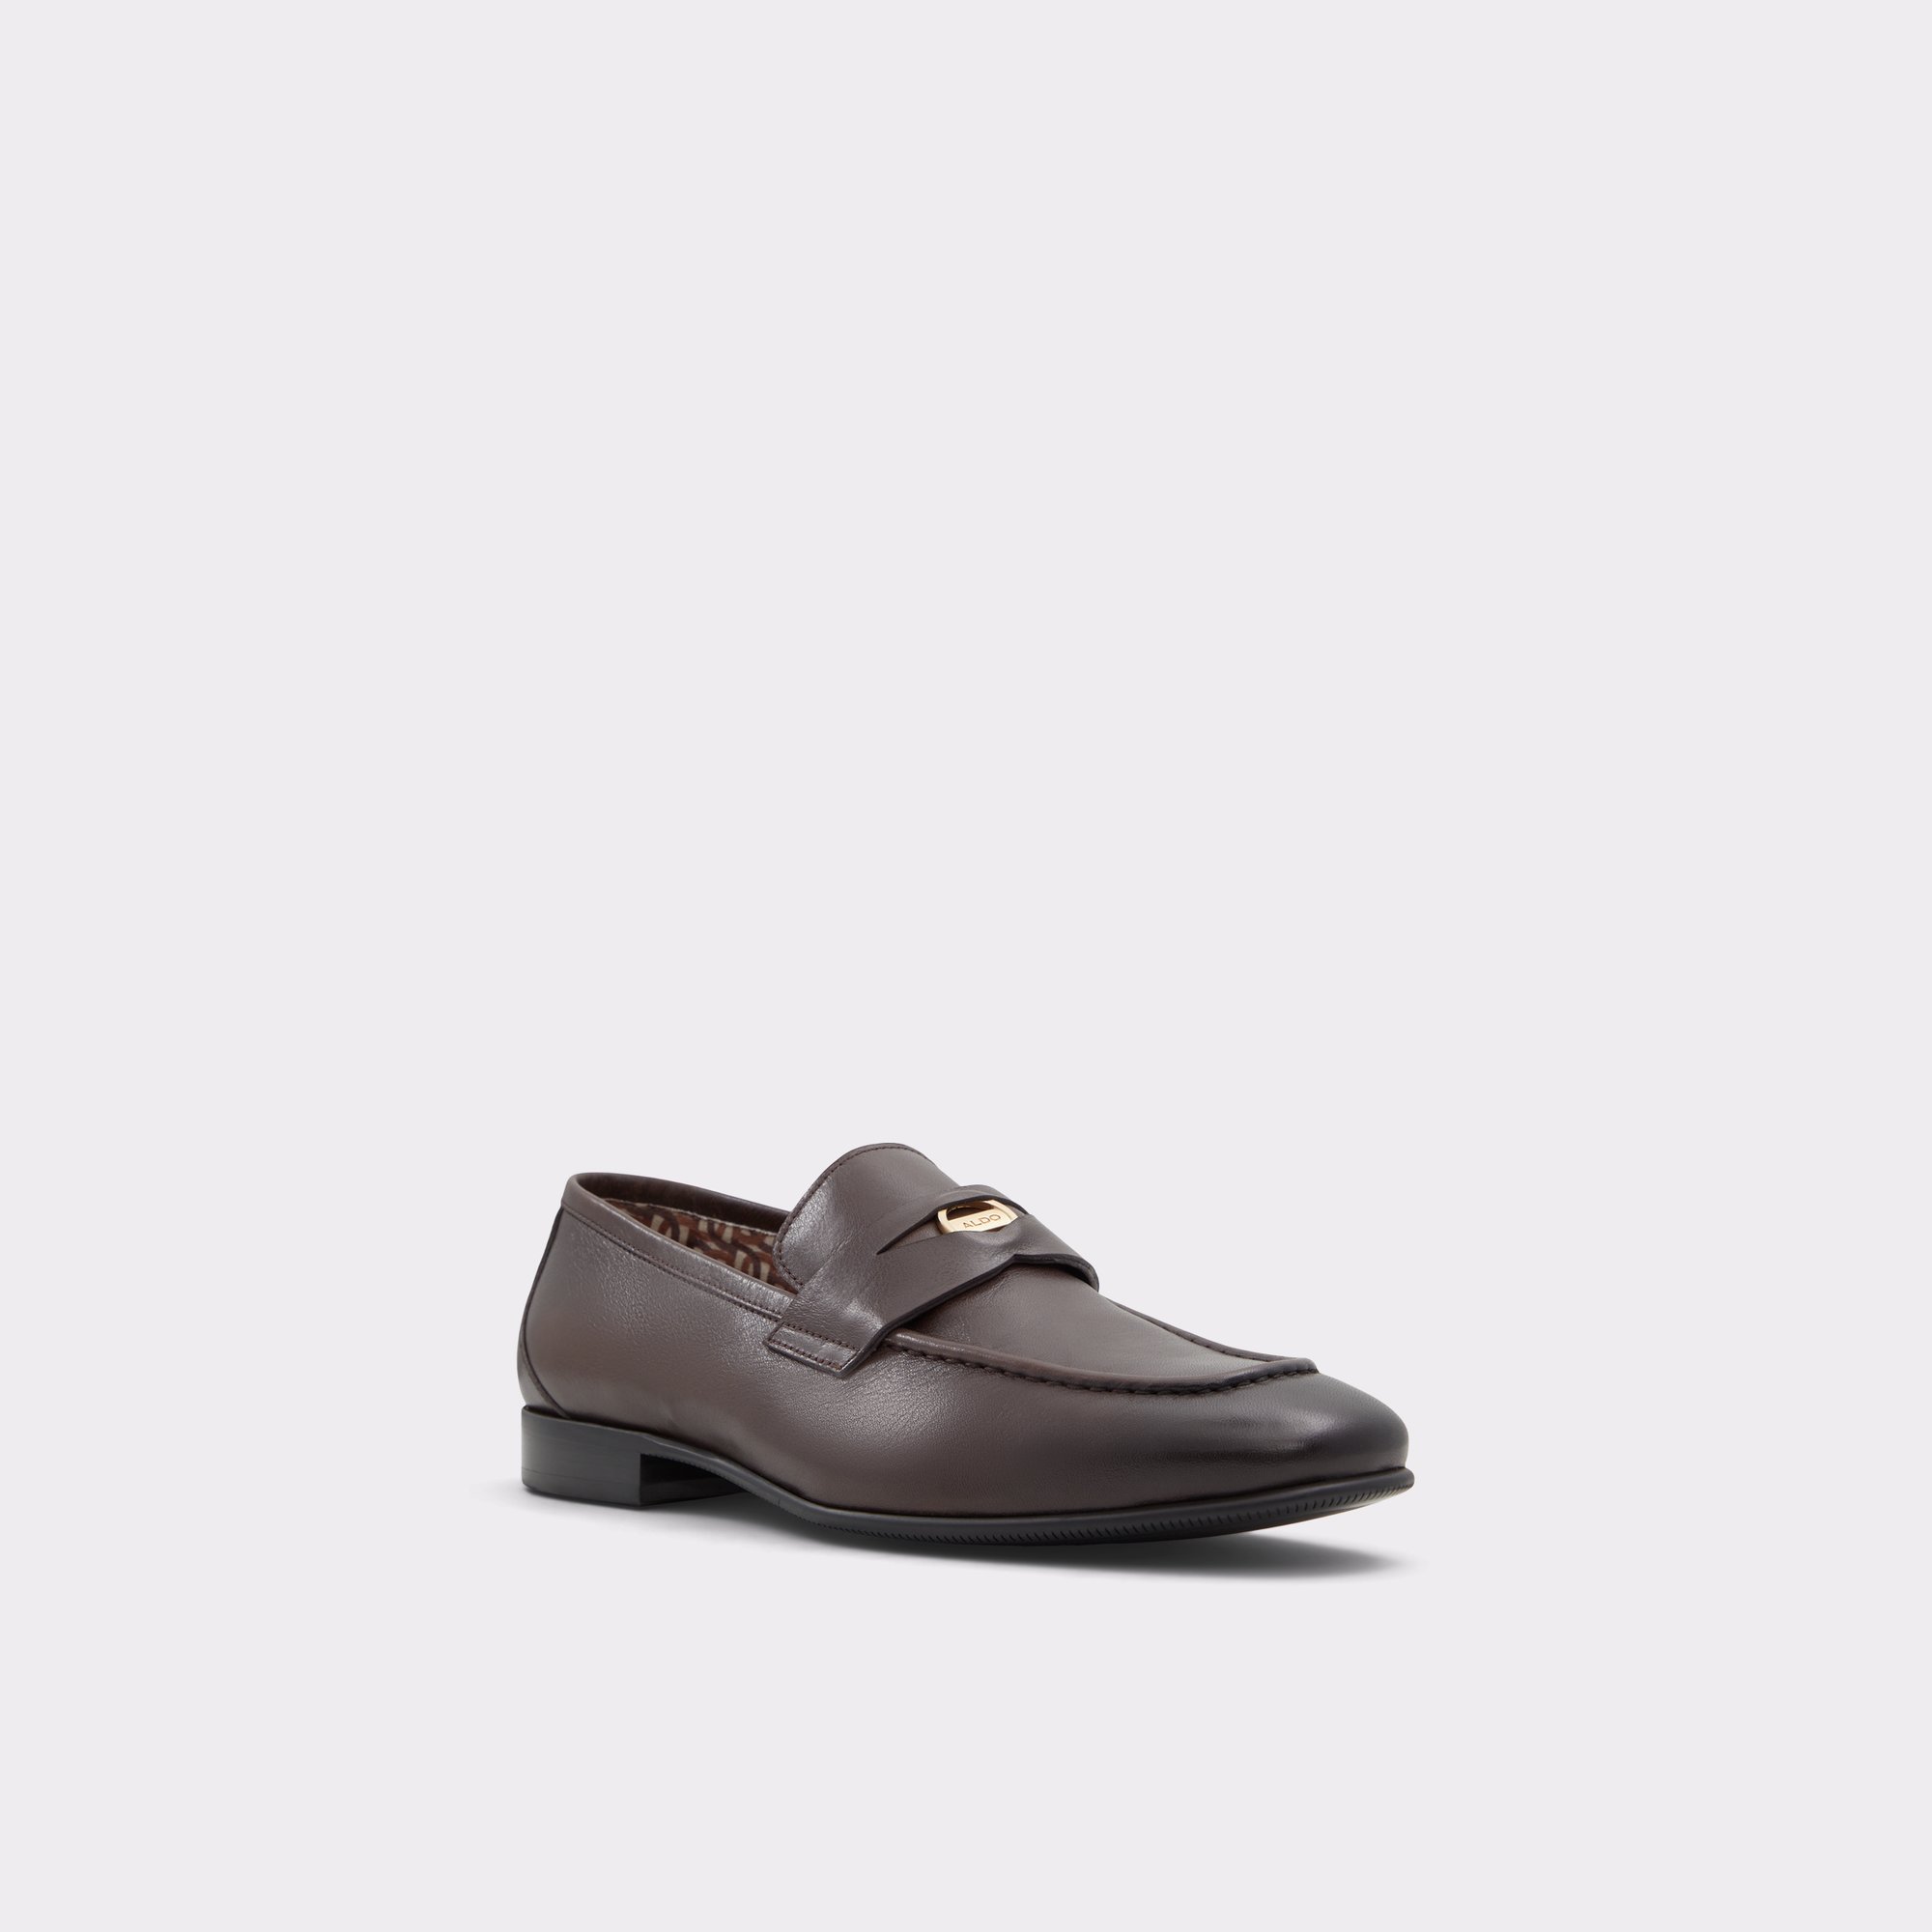 Esquire Brown Men's Dress Shoes ALDO US, 56% OFF